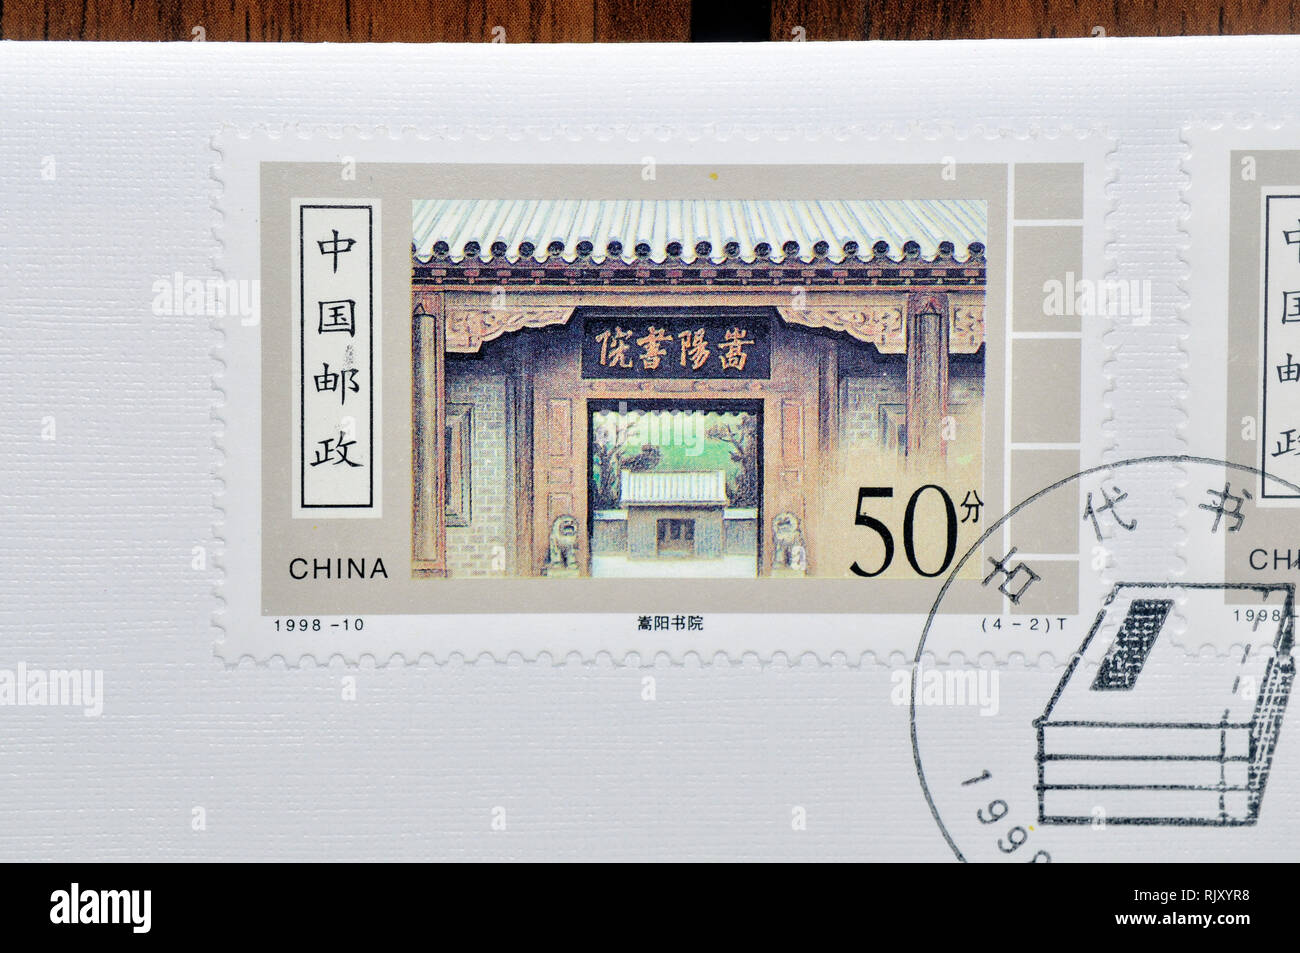 CHINA - CIRCA 1998: A stamp printed in China shows 1998-10 Ancient Academies, circa 1998 Stock Photo